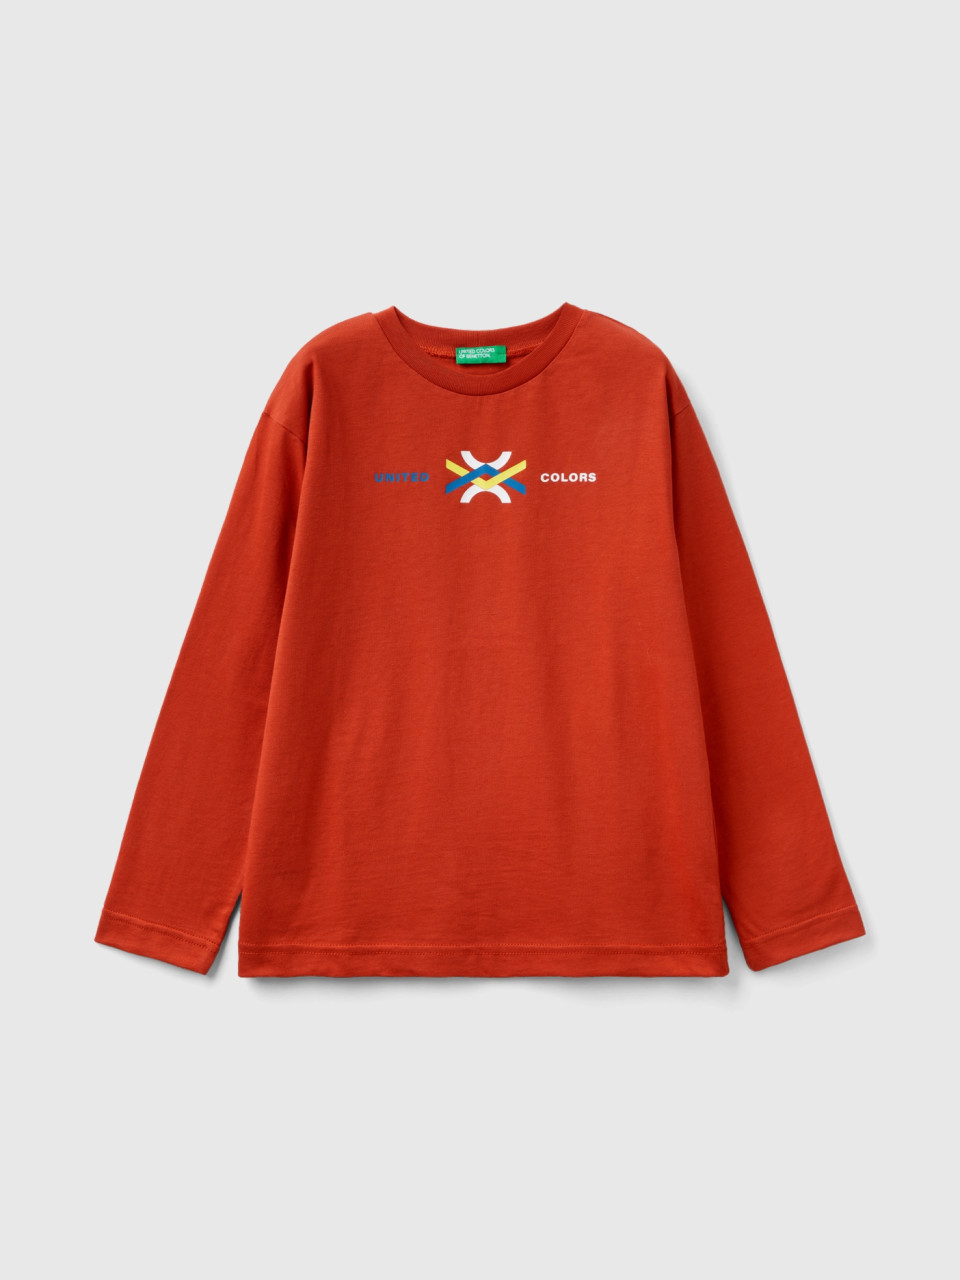 Benetton, Camiseta De Manga Larga De Algodón Orgánico, Rojo Teja, Niños